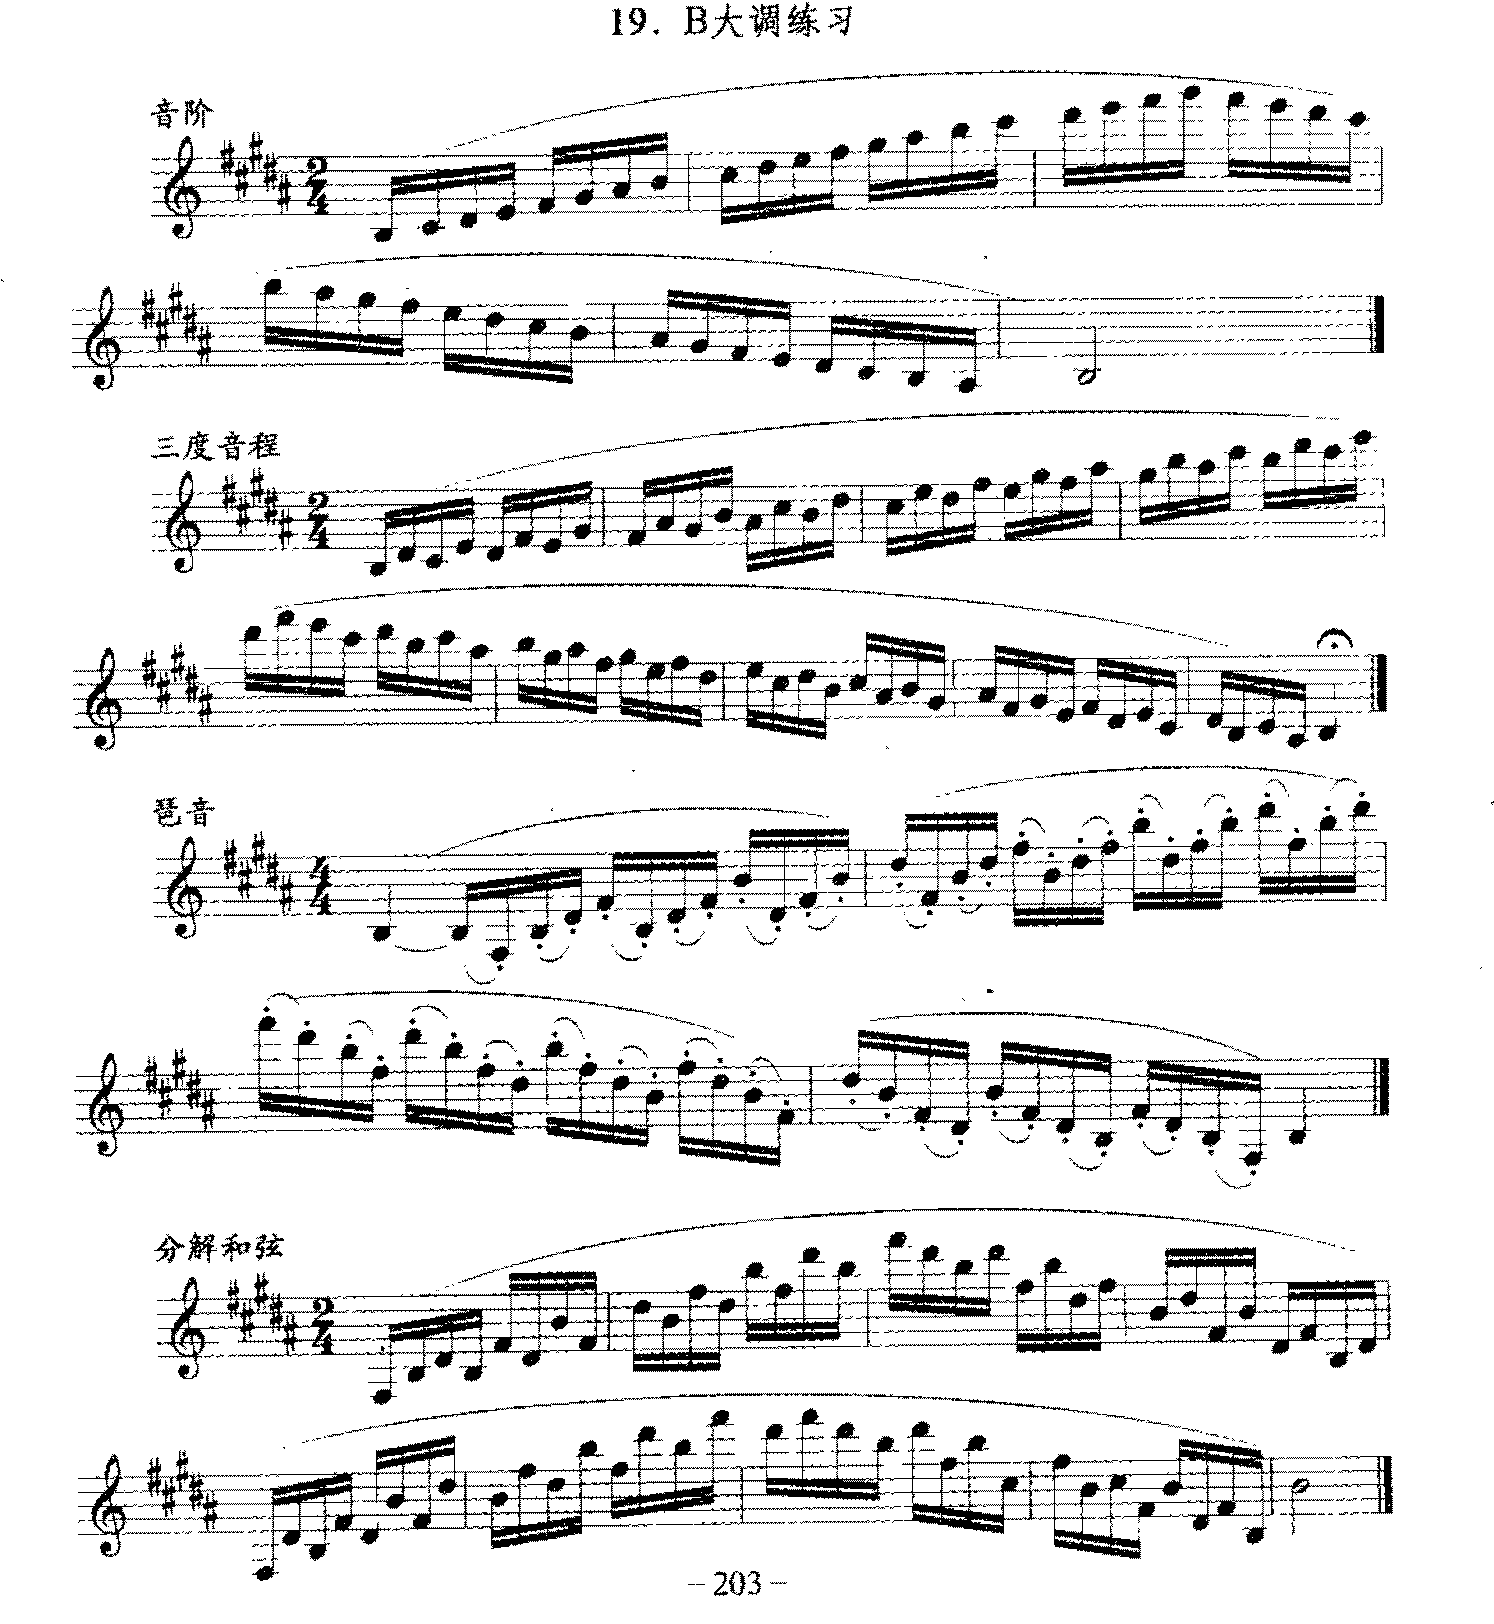 单簧管日常基础技术练习曲《B大调练习》